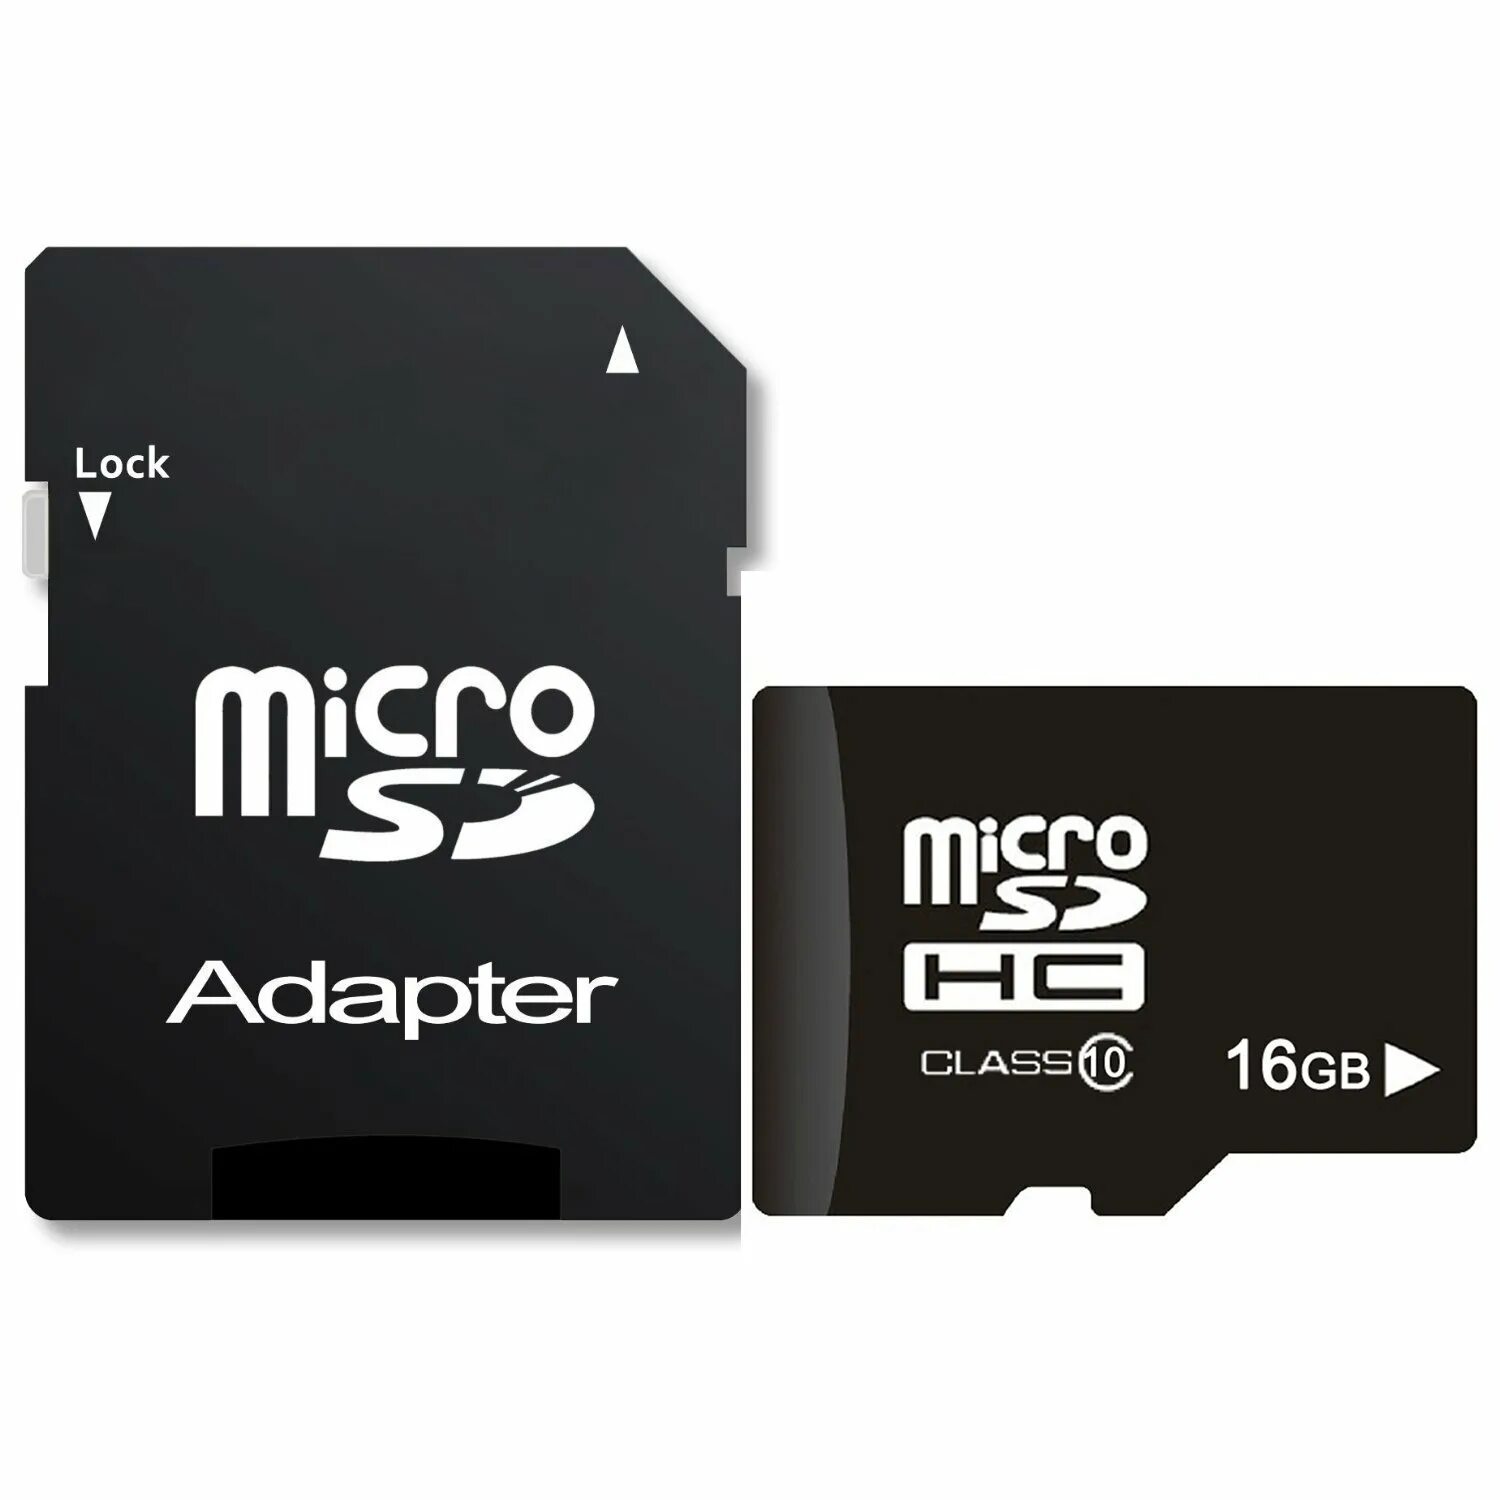 SLC MICROSD Card 16gb. SD Card 16 GB for Phone. Микро СД 16 ГБ. Флешка микро СД 16 ГБ фикс прайс.